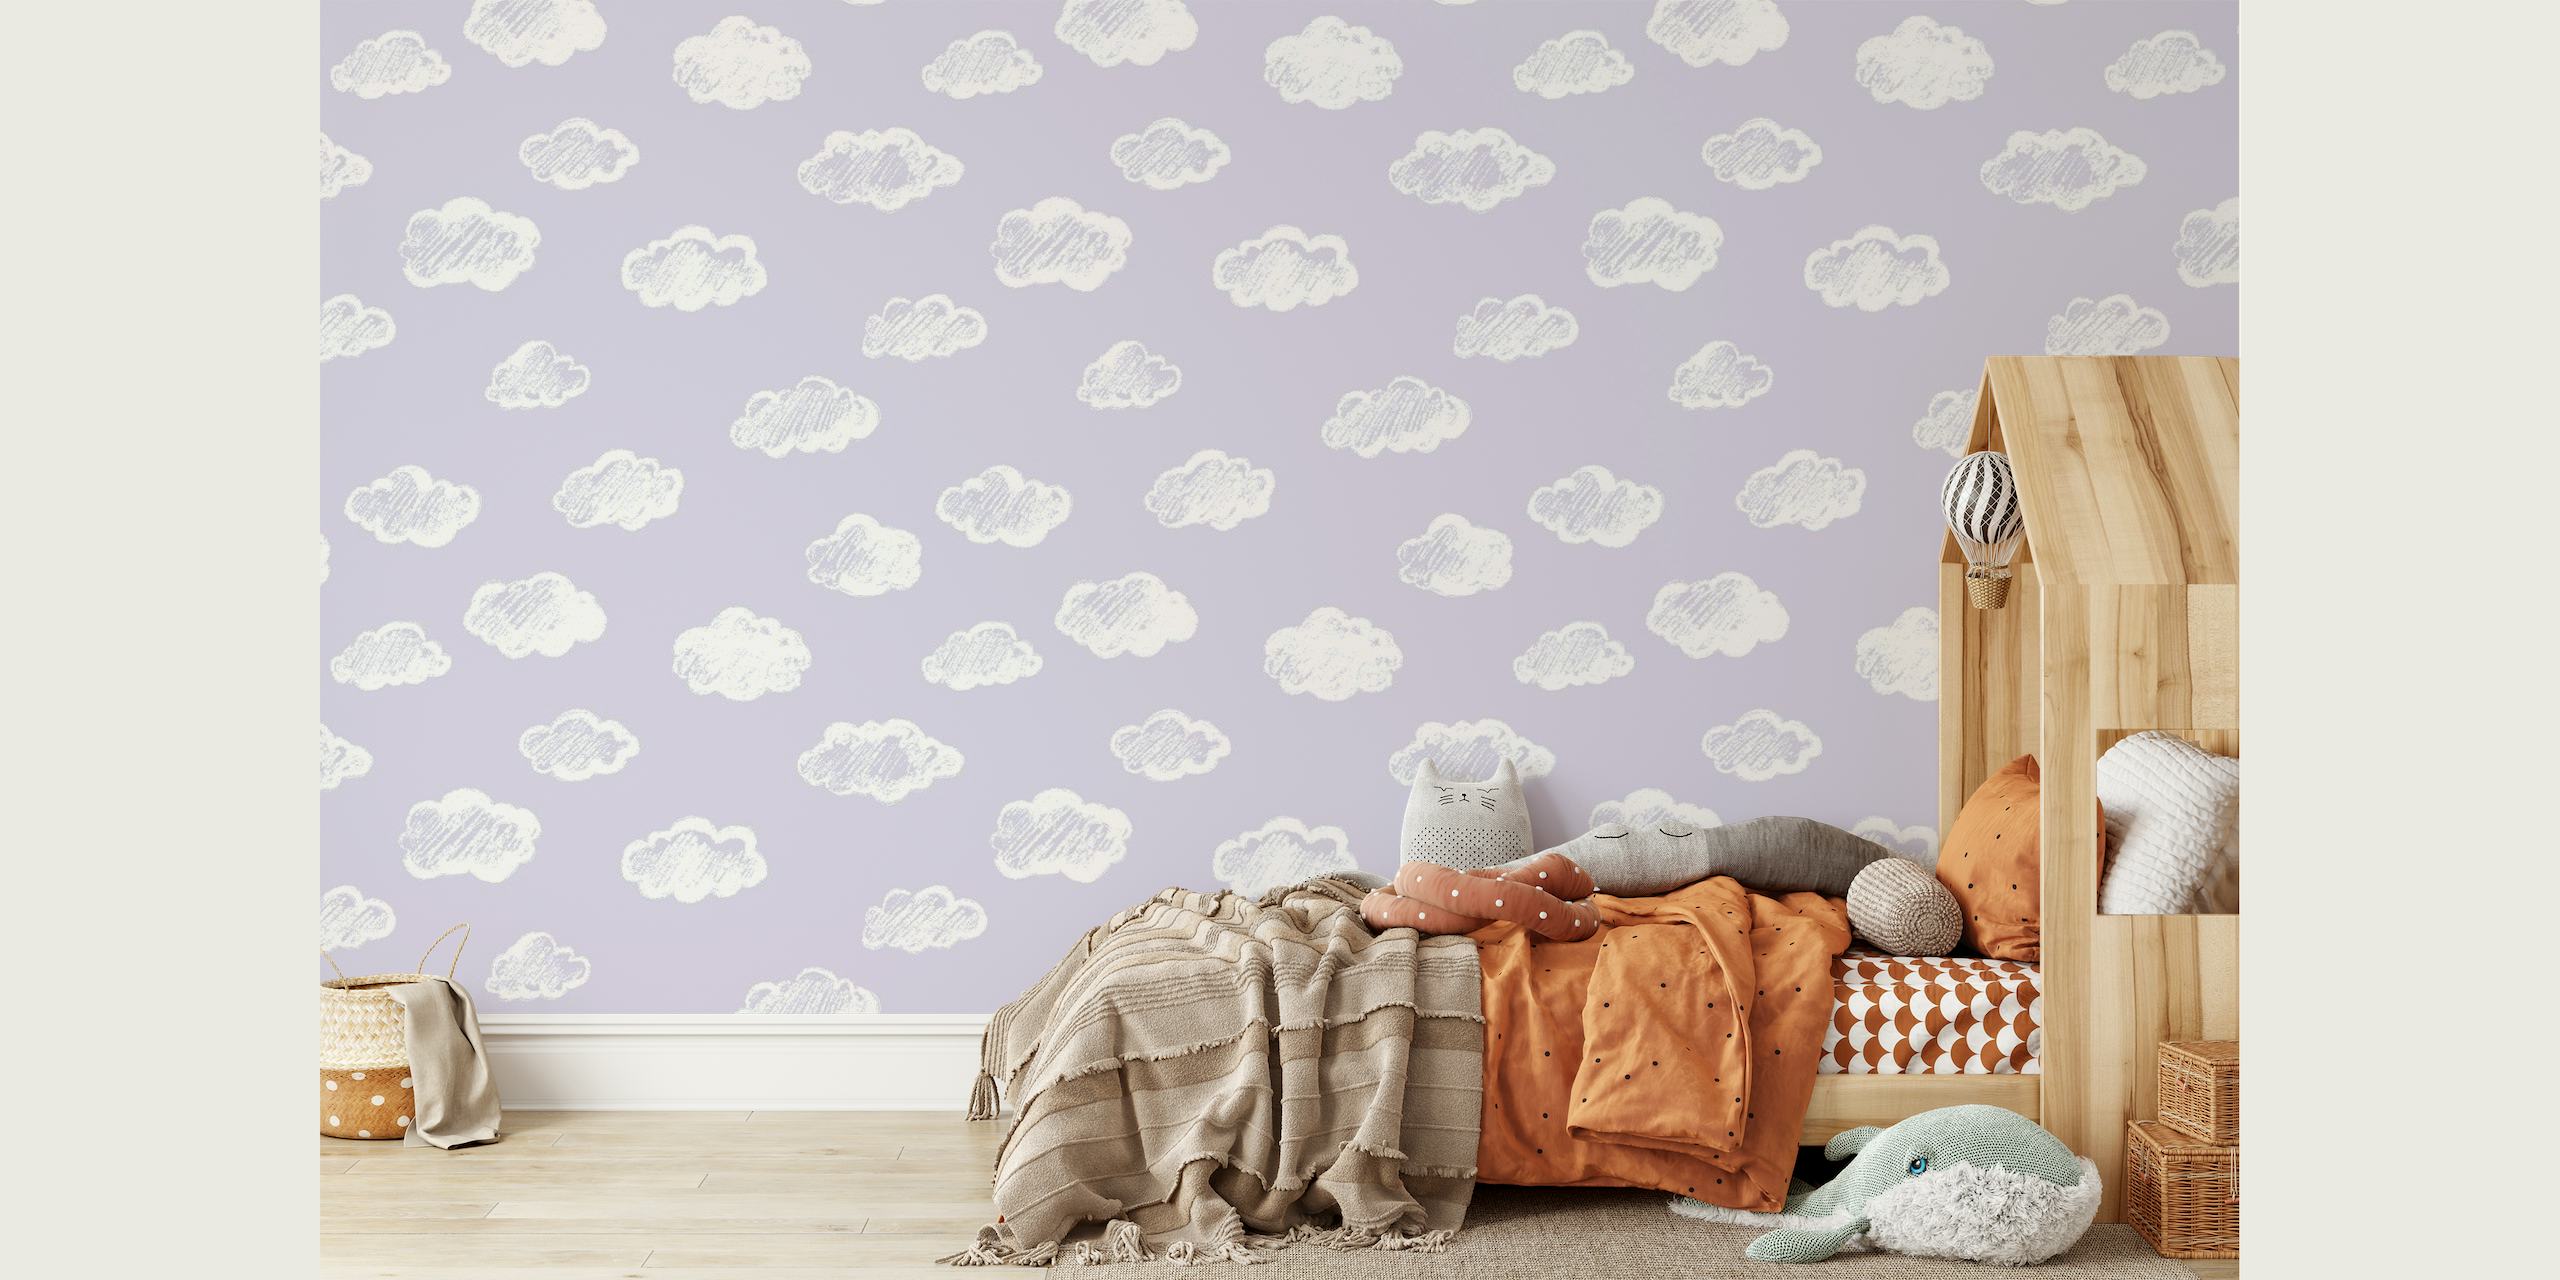 Bijeli oblaci nalik kredi na mekoj pozadini zidnog murala u boji lavande